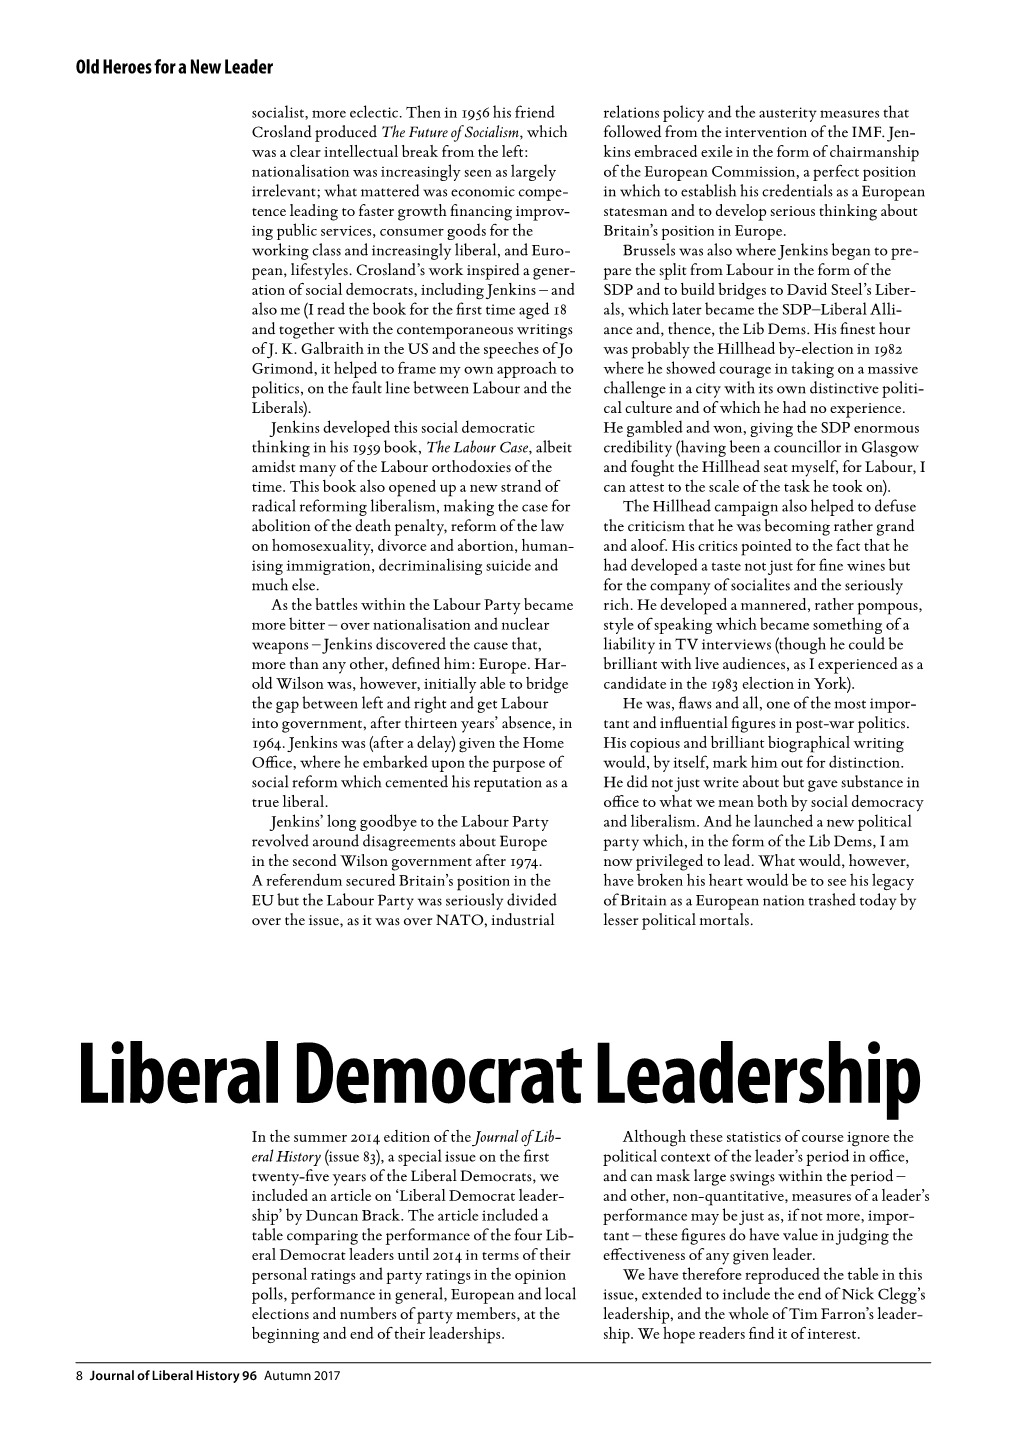 96 Liberal Democrat Leadership